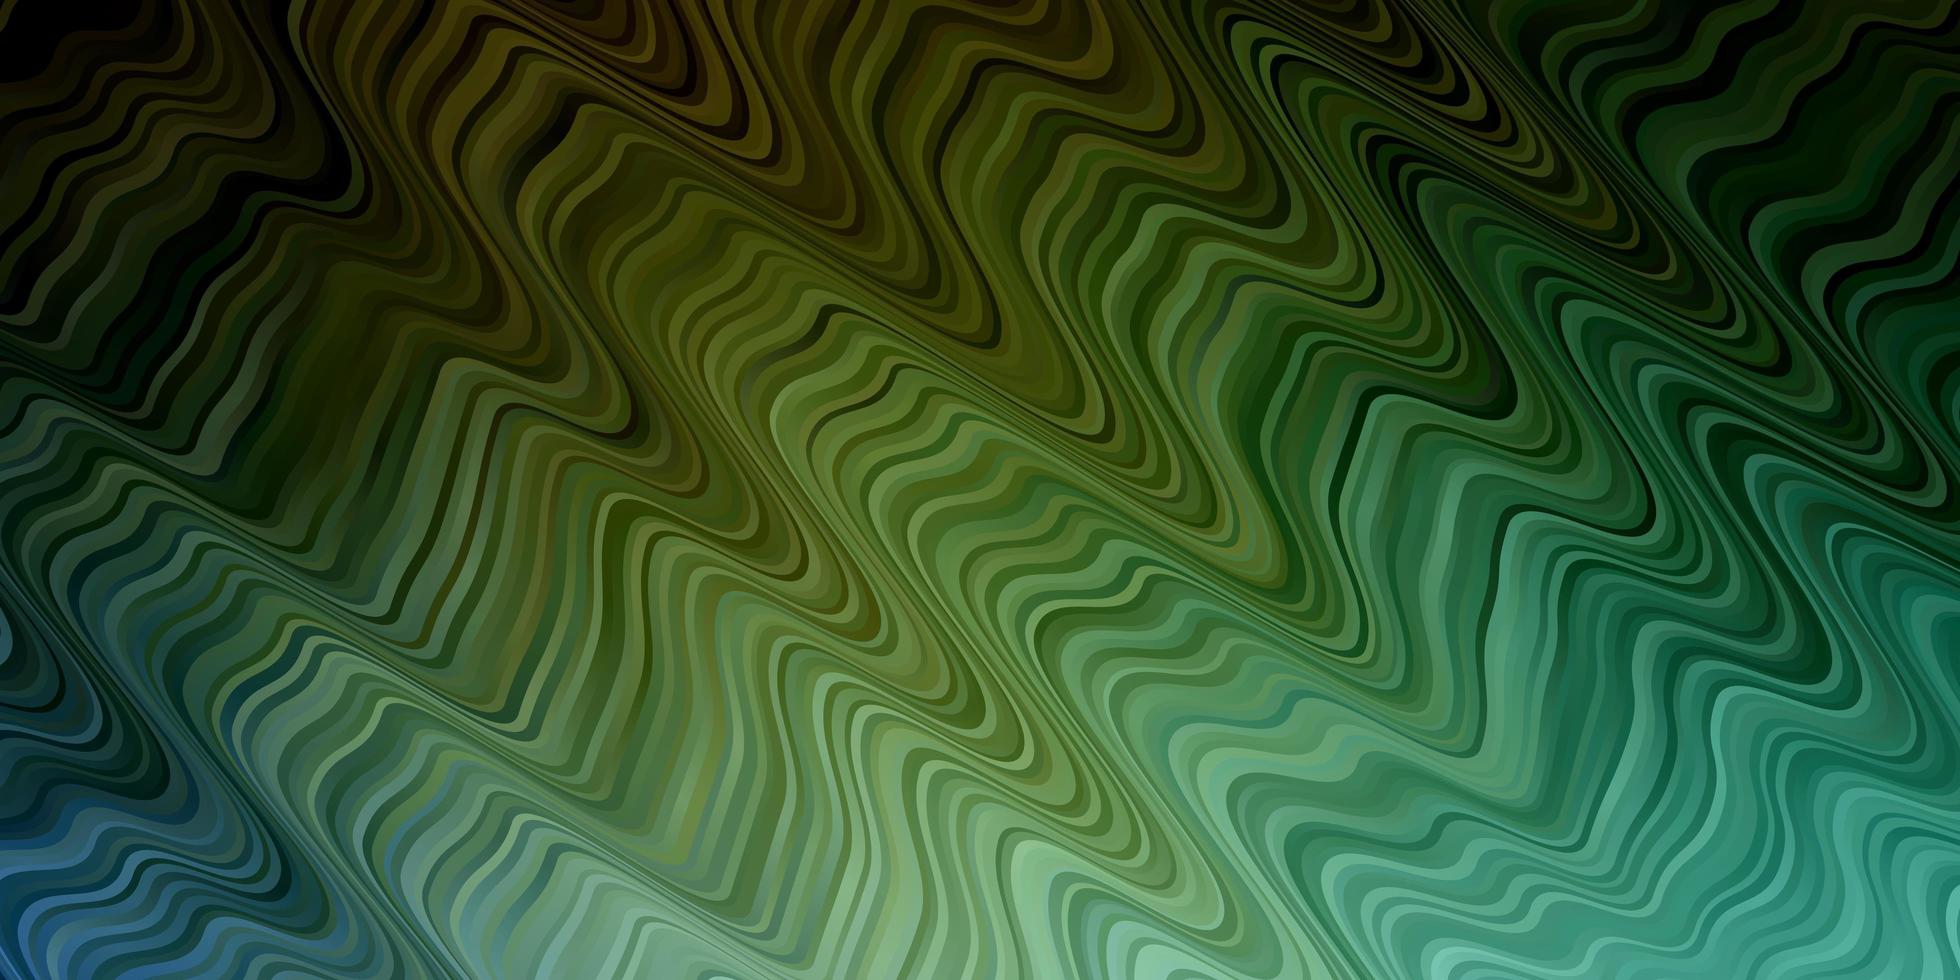 ljusblå, grön vektormall med böjda linjer. färgglad illustration med böjda linjer. mönster för reklam, annonser. vektor